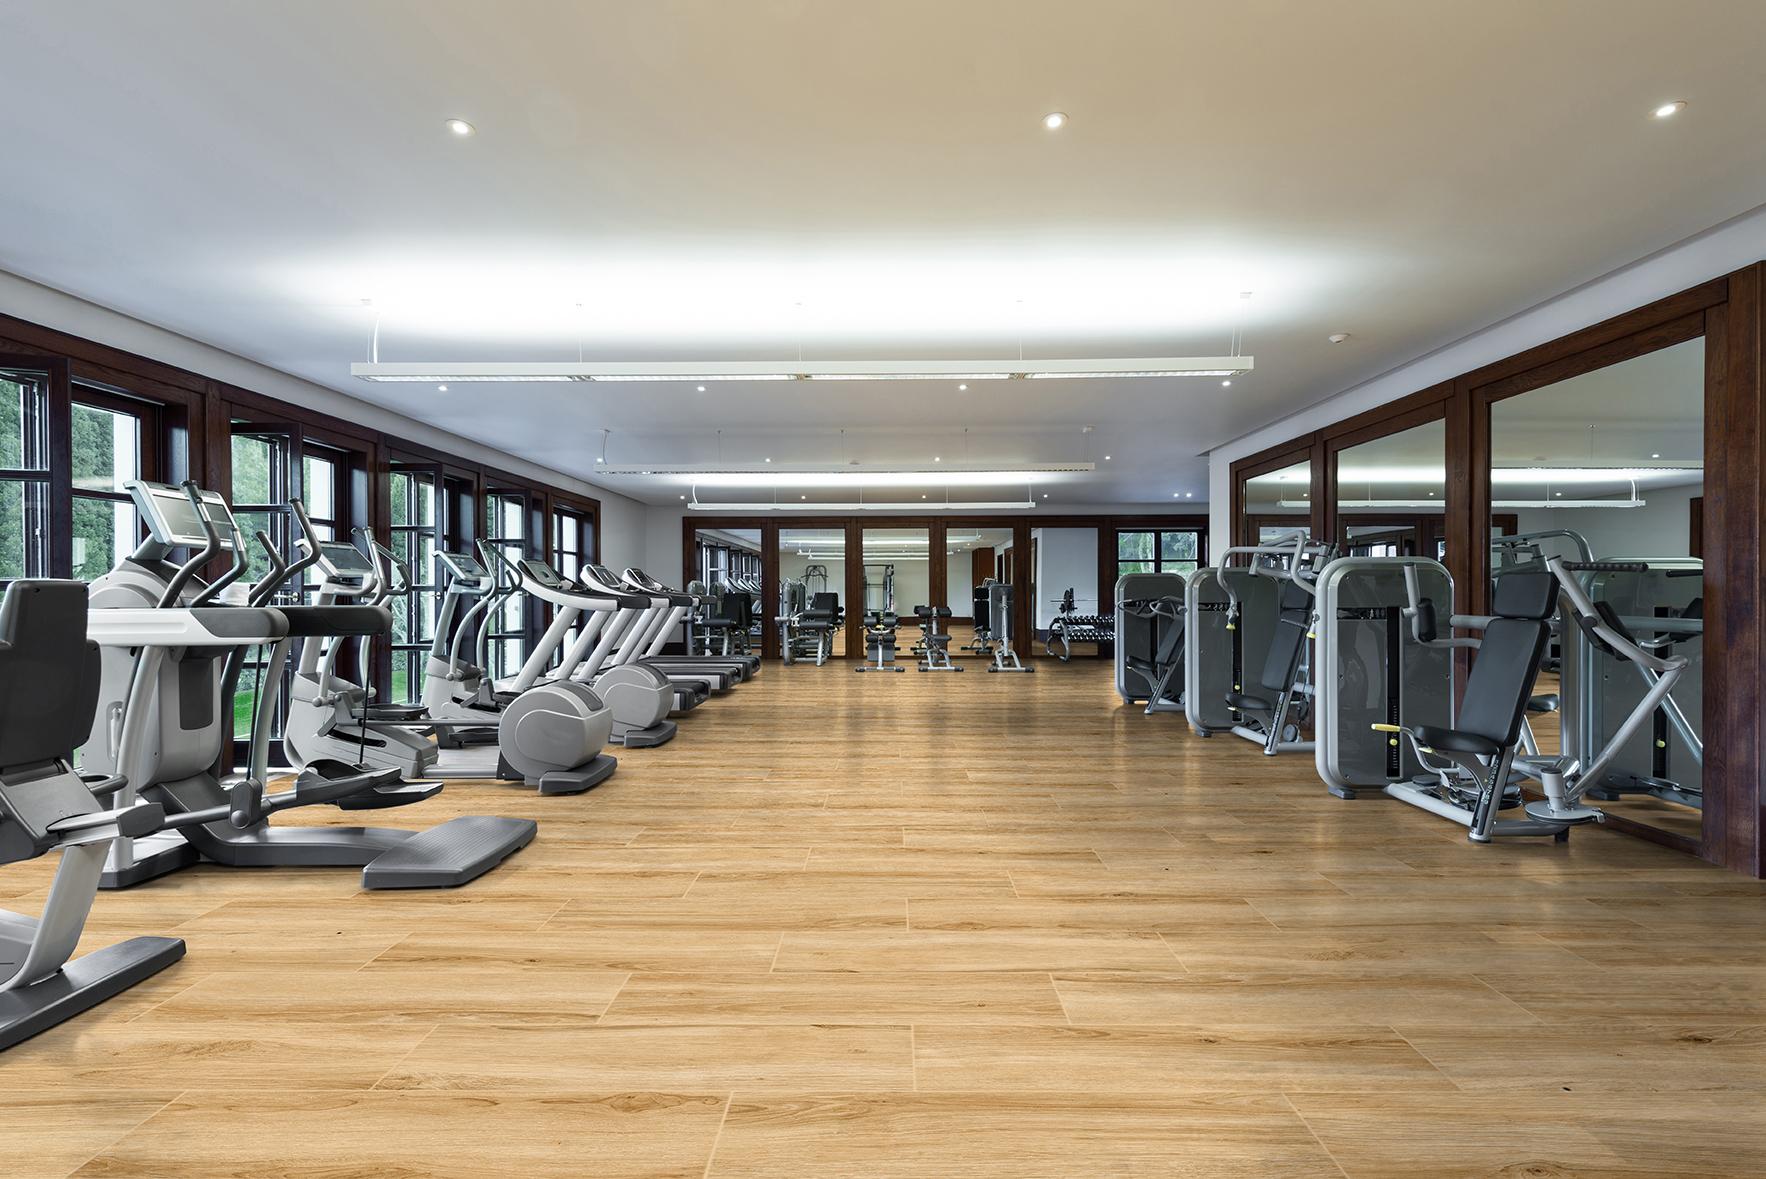 Fitness center interior. Gym